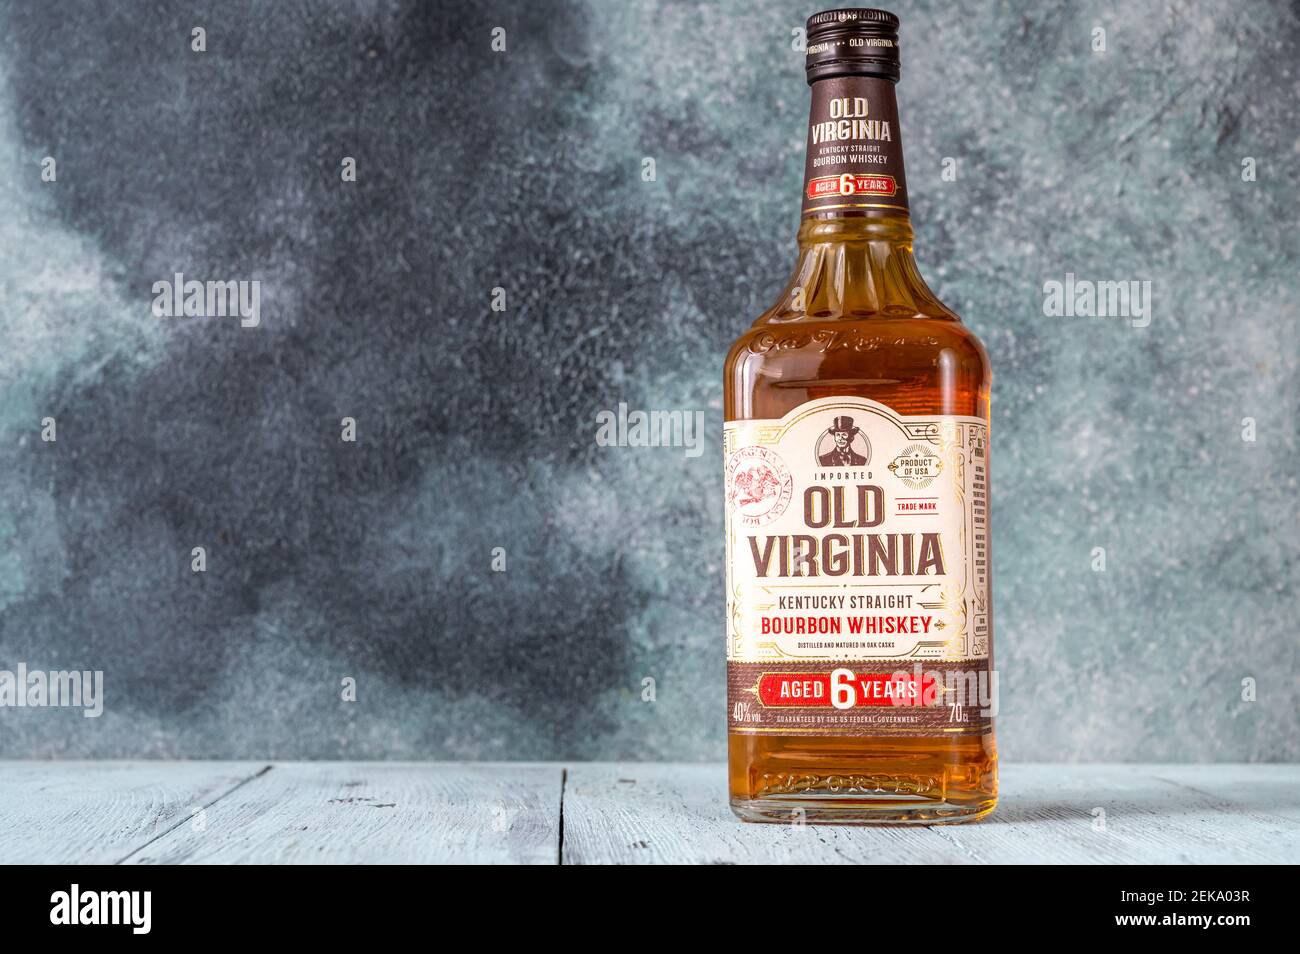 SUMY, UKRAINE - 22 FÉVRIER : bouteille de whisky de l'ancienne Virginie le 22 février 2021. Le whisky Old Virginia est un whisky Bourbon pur authentique produit en Banque D'Images